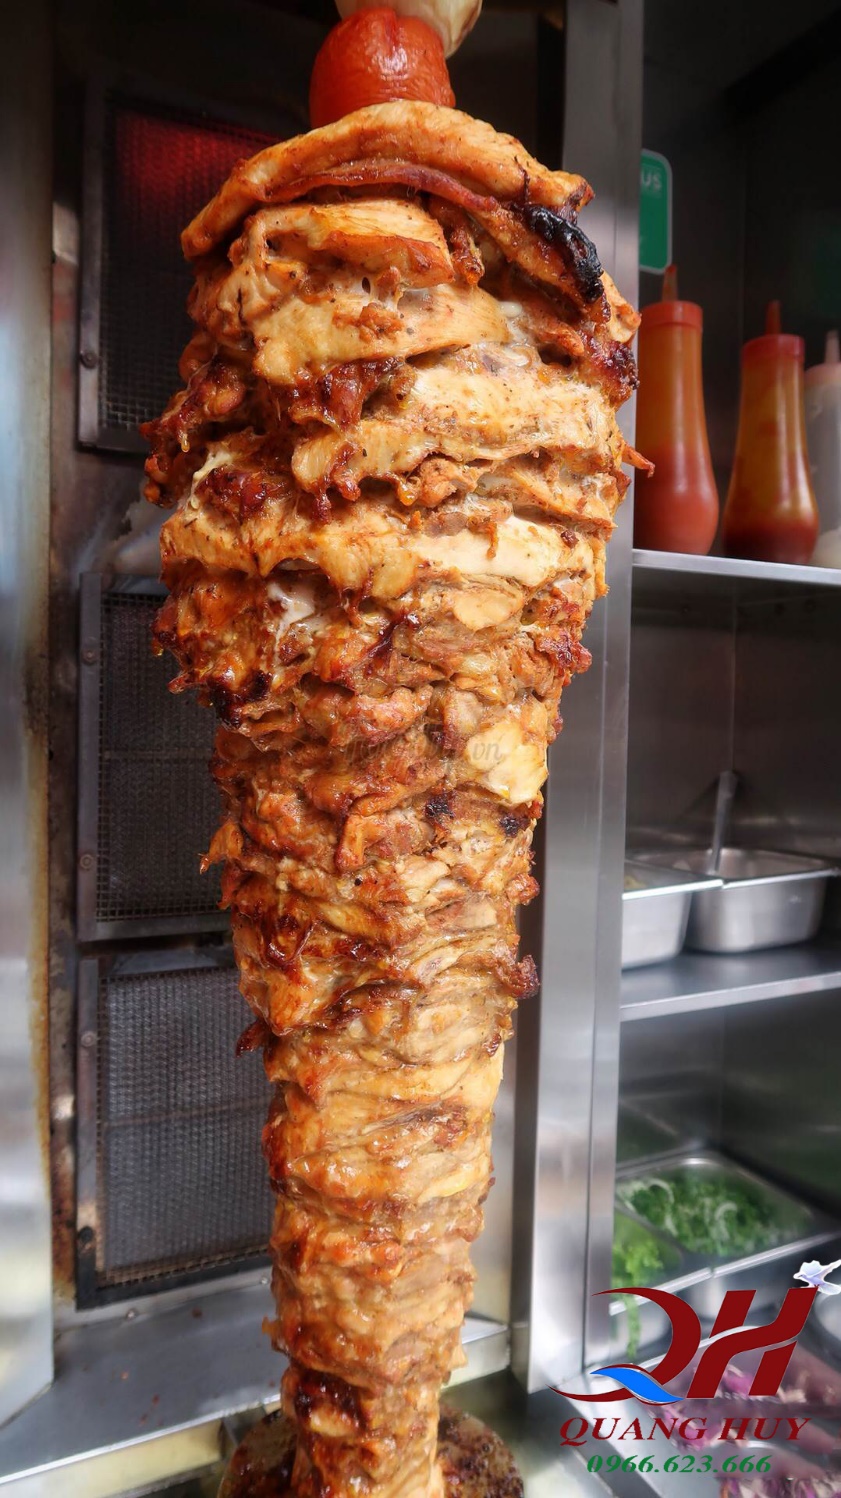 Đã mắt với cây thịt nướng làm từ thịt gà của King Kebab